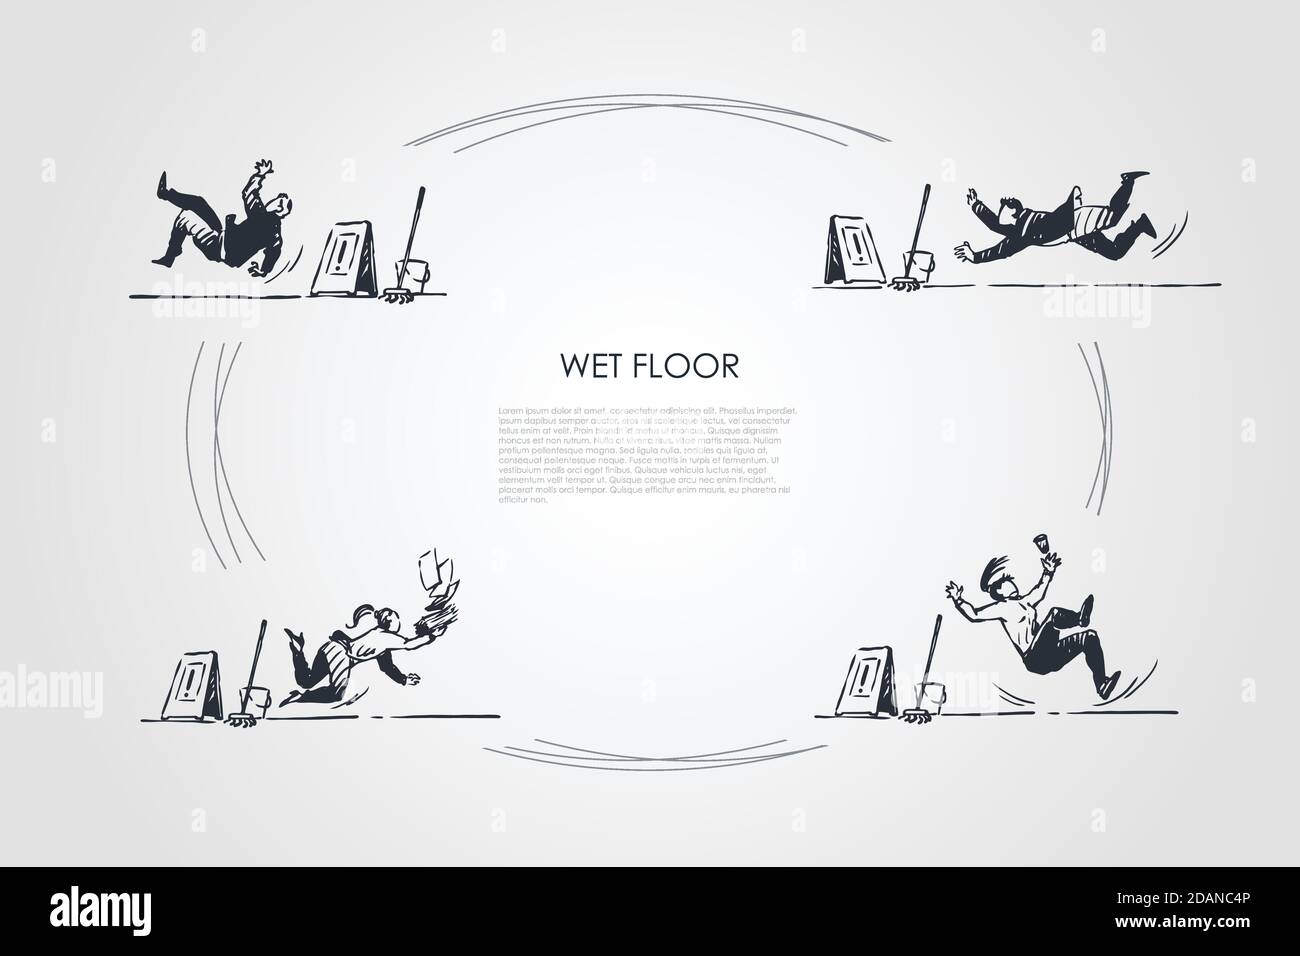 Wet floor - people falling down on wet floor with special sign vector concept set Stock Vector